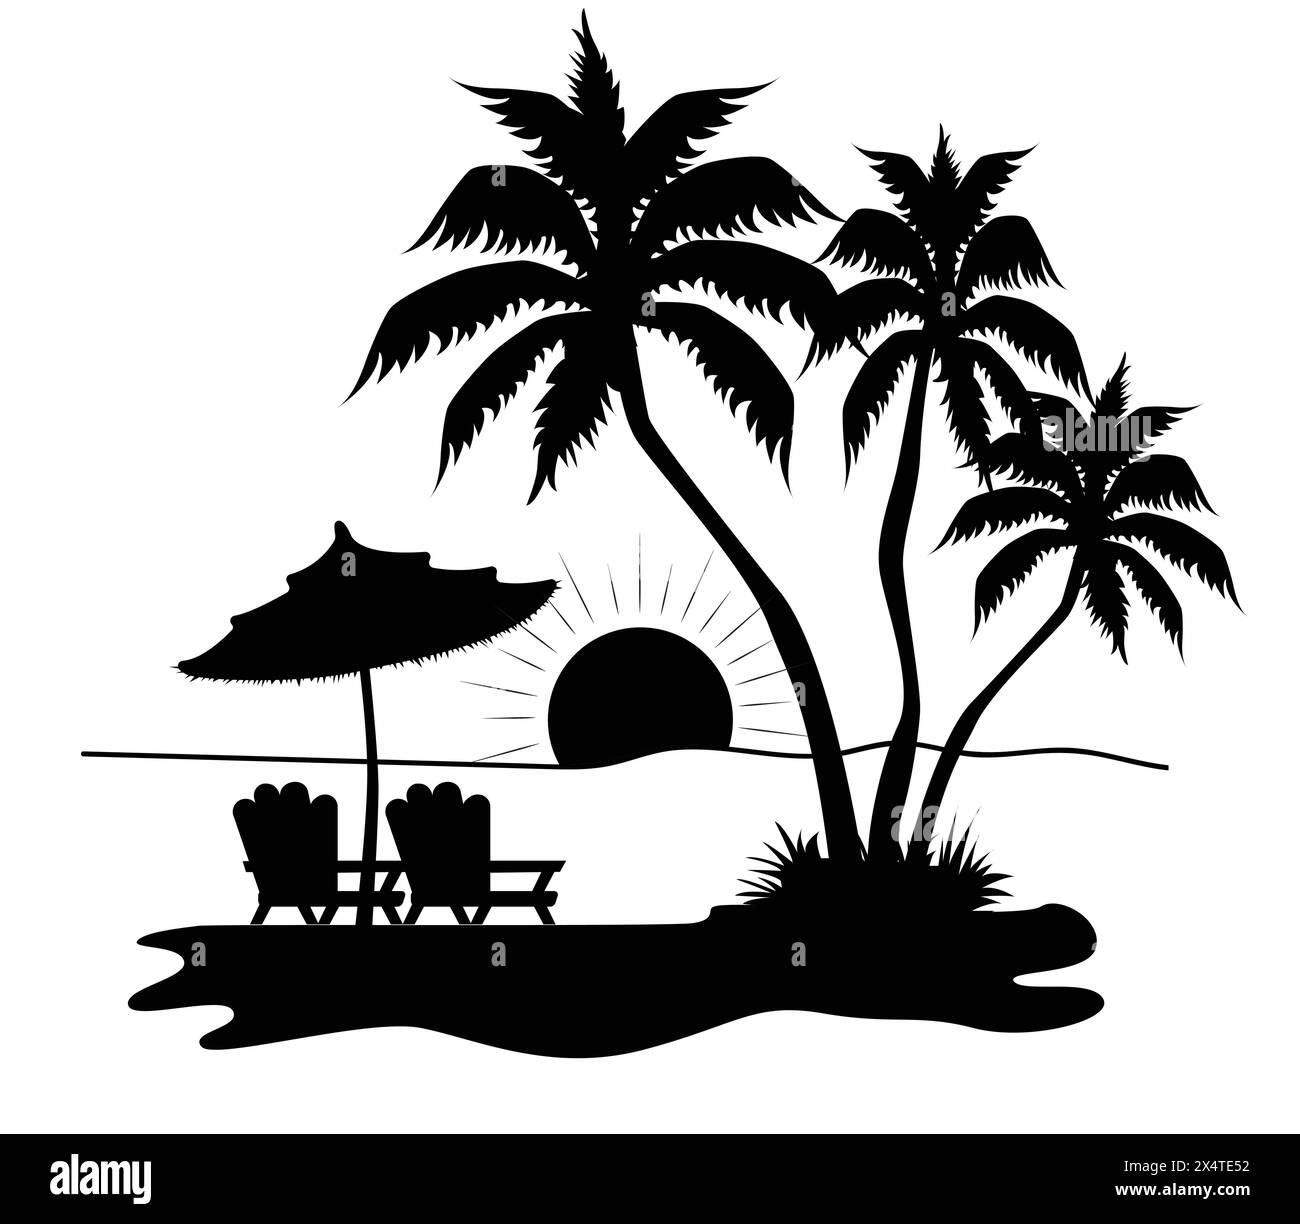 Palmen mit zwei Liegestühlen und einem Sonnenschirm mit untergehender Sonne Illustrator Stock Vektor